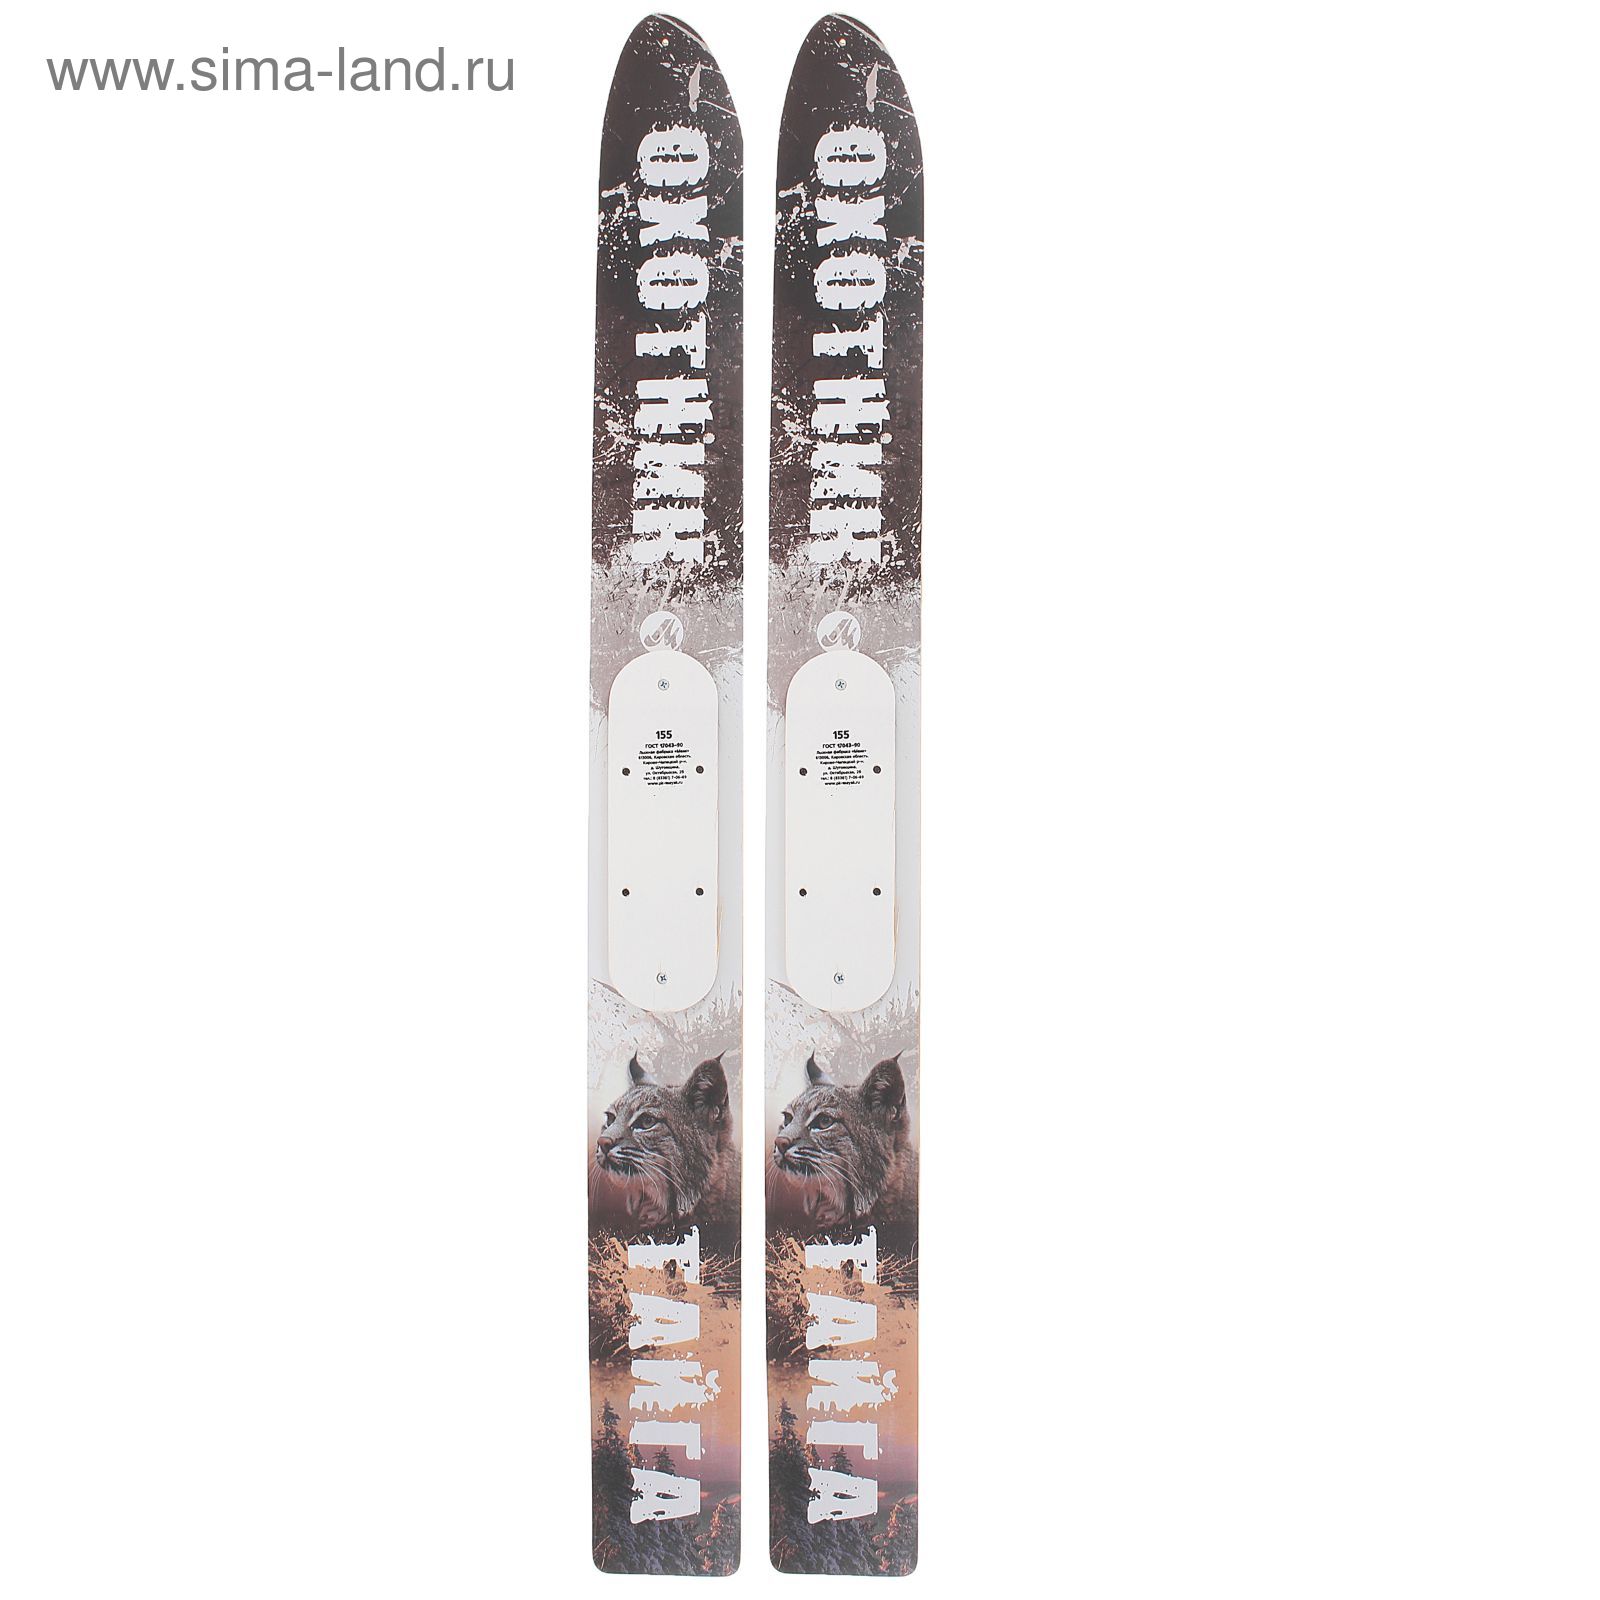 Лыжи промысловые DEER деревянные  (155см, краска)  МИКС